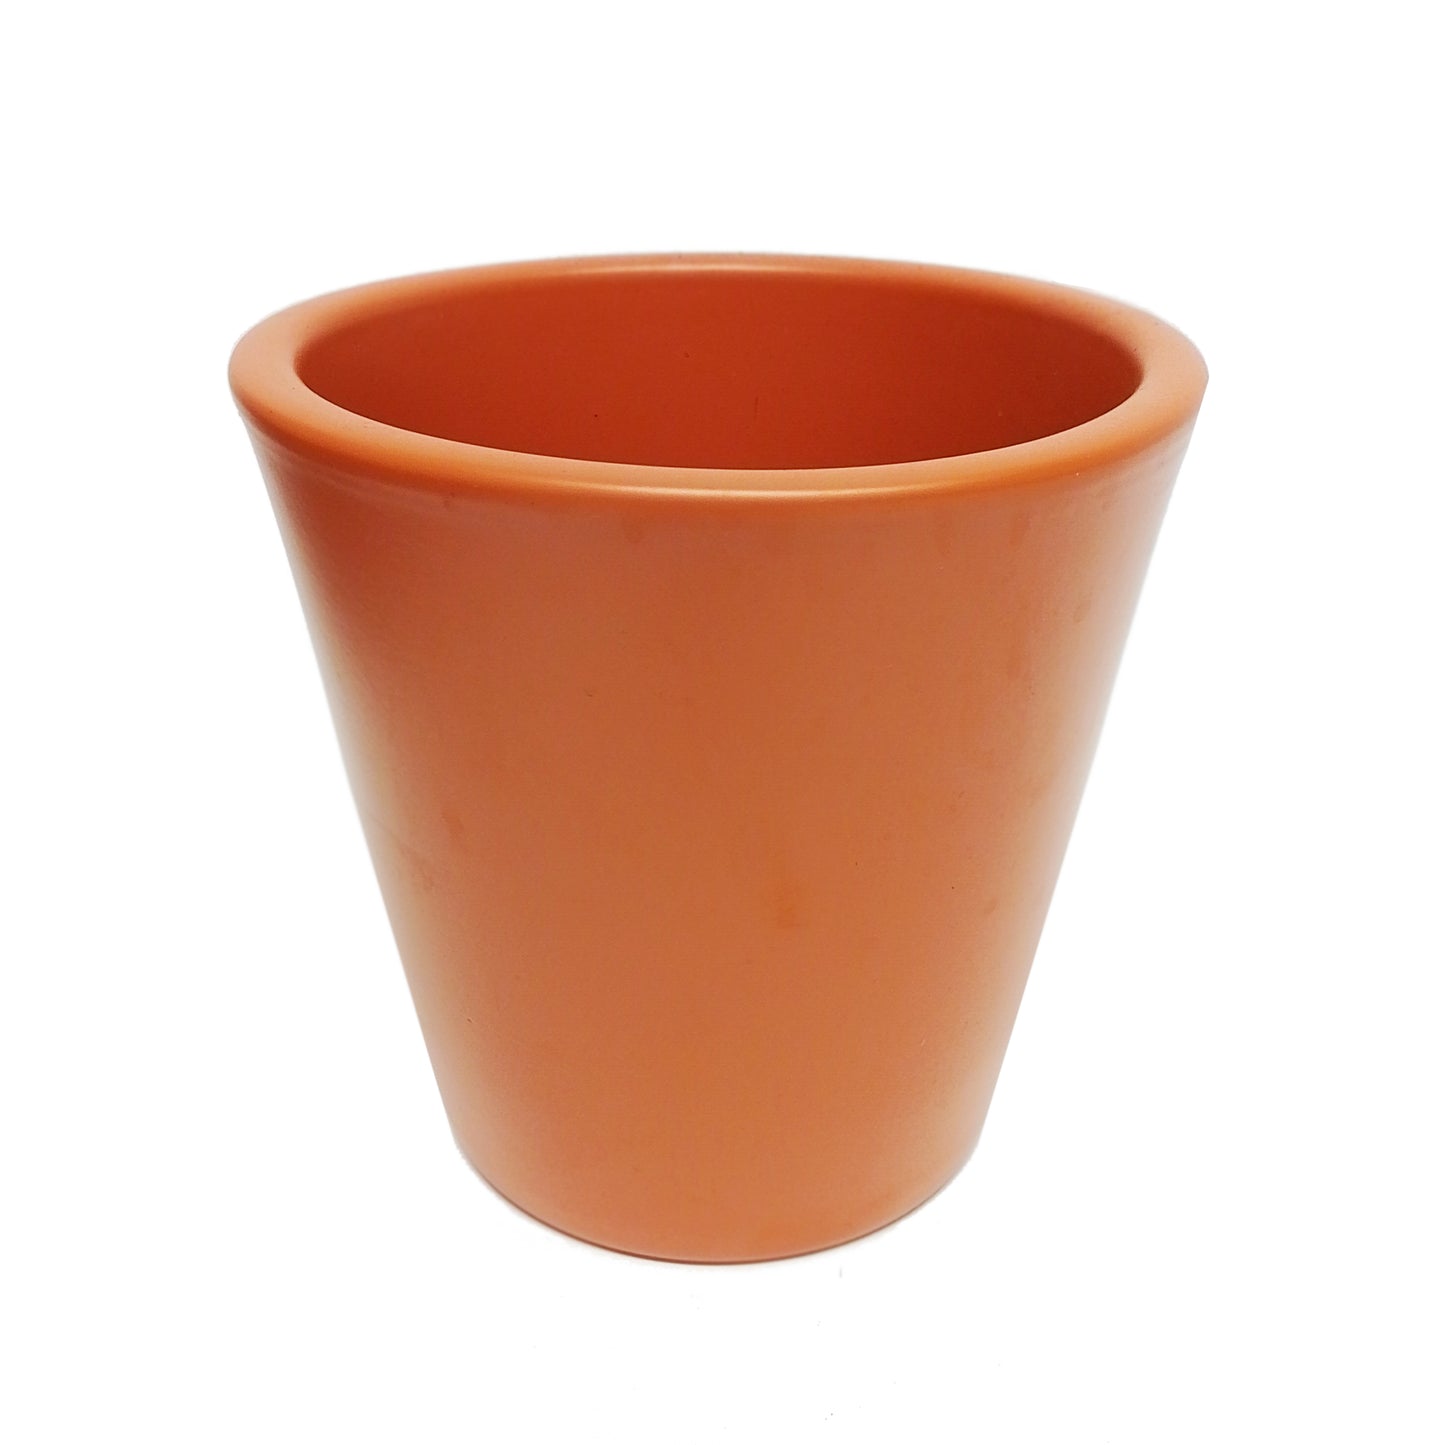 Vinci Terracotta Plant Pot